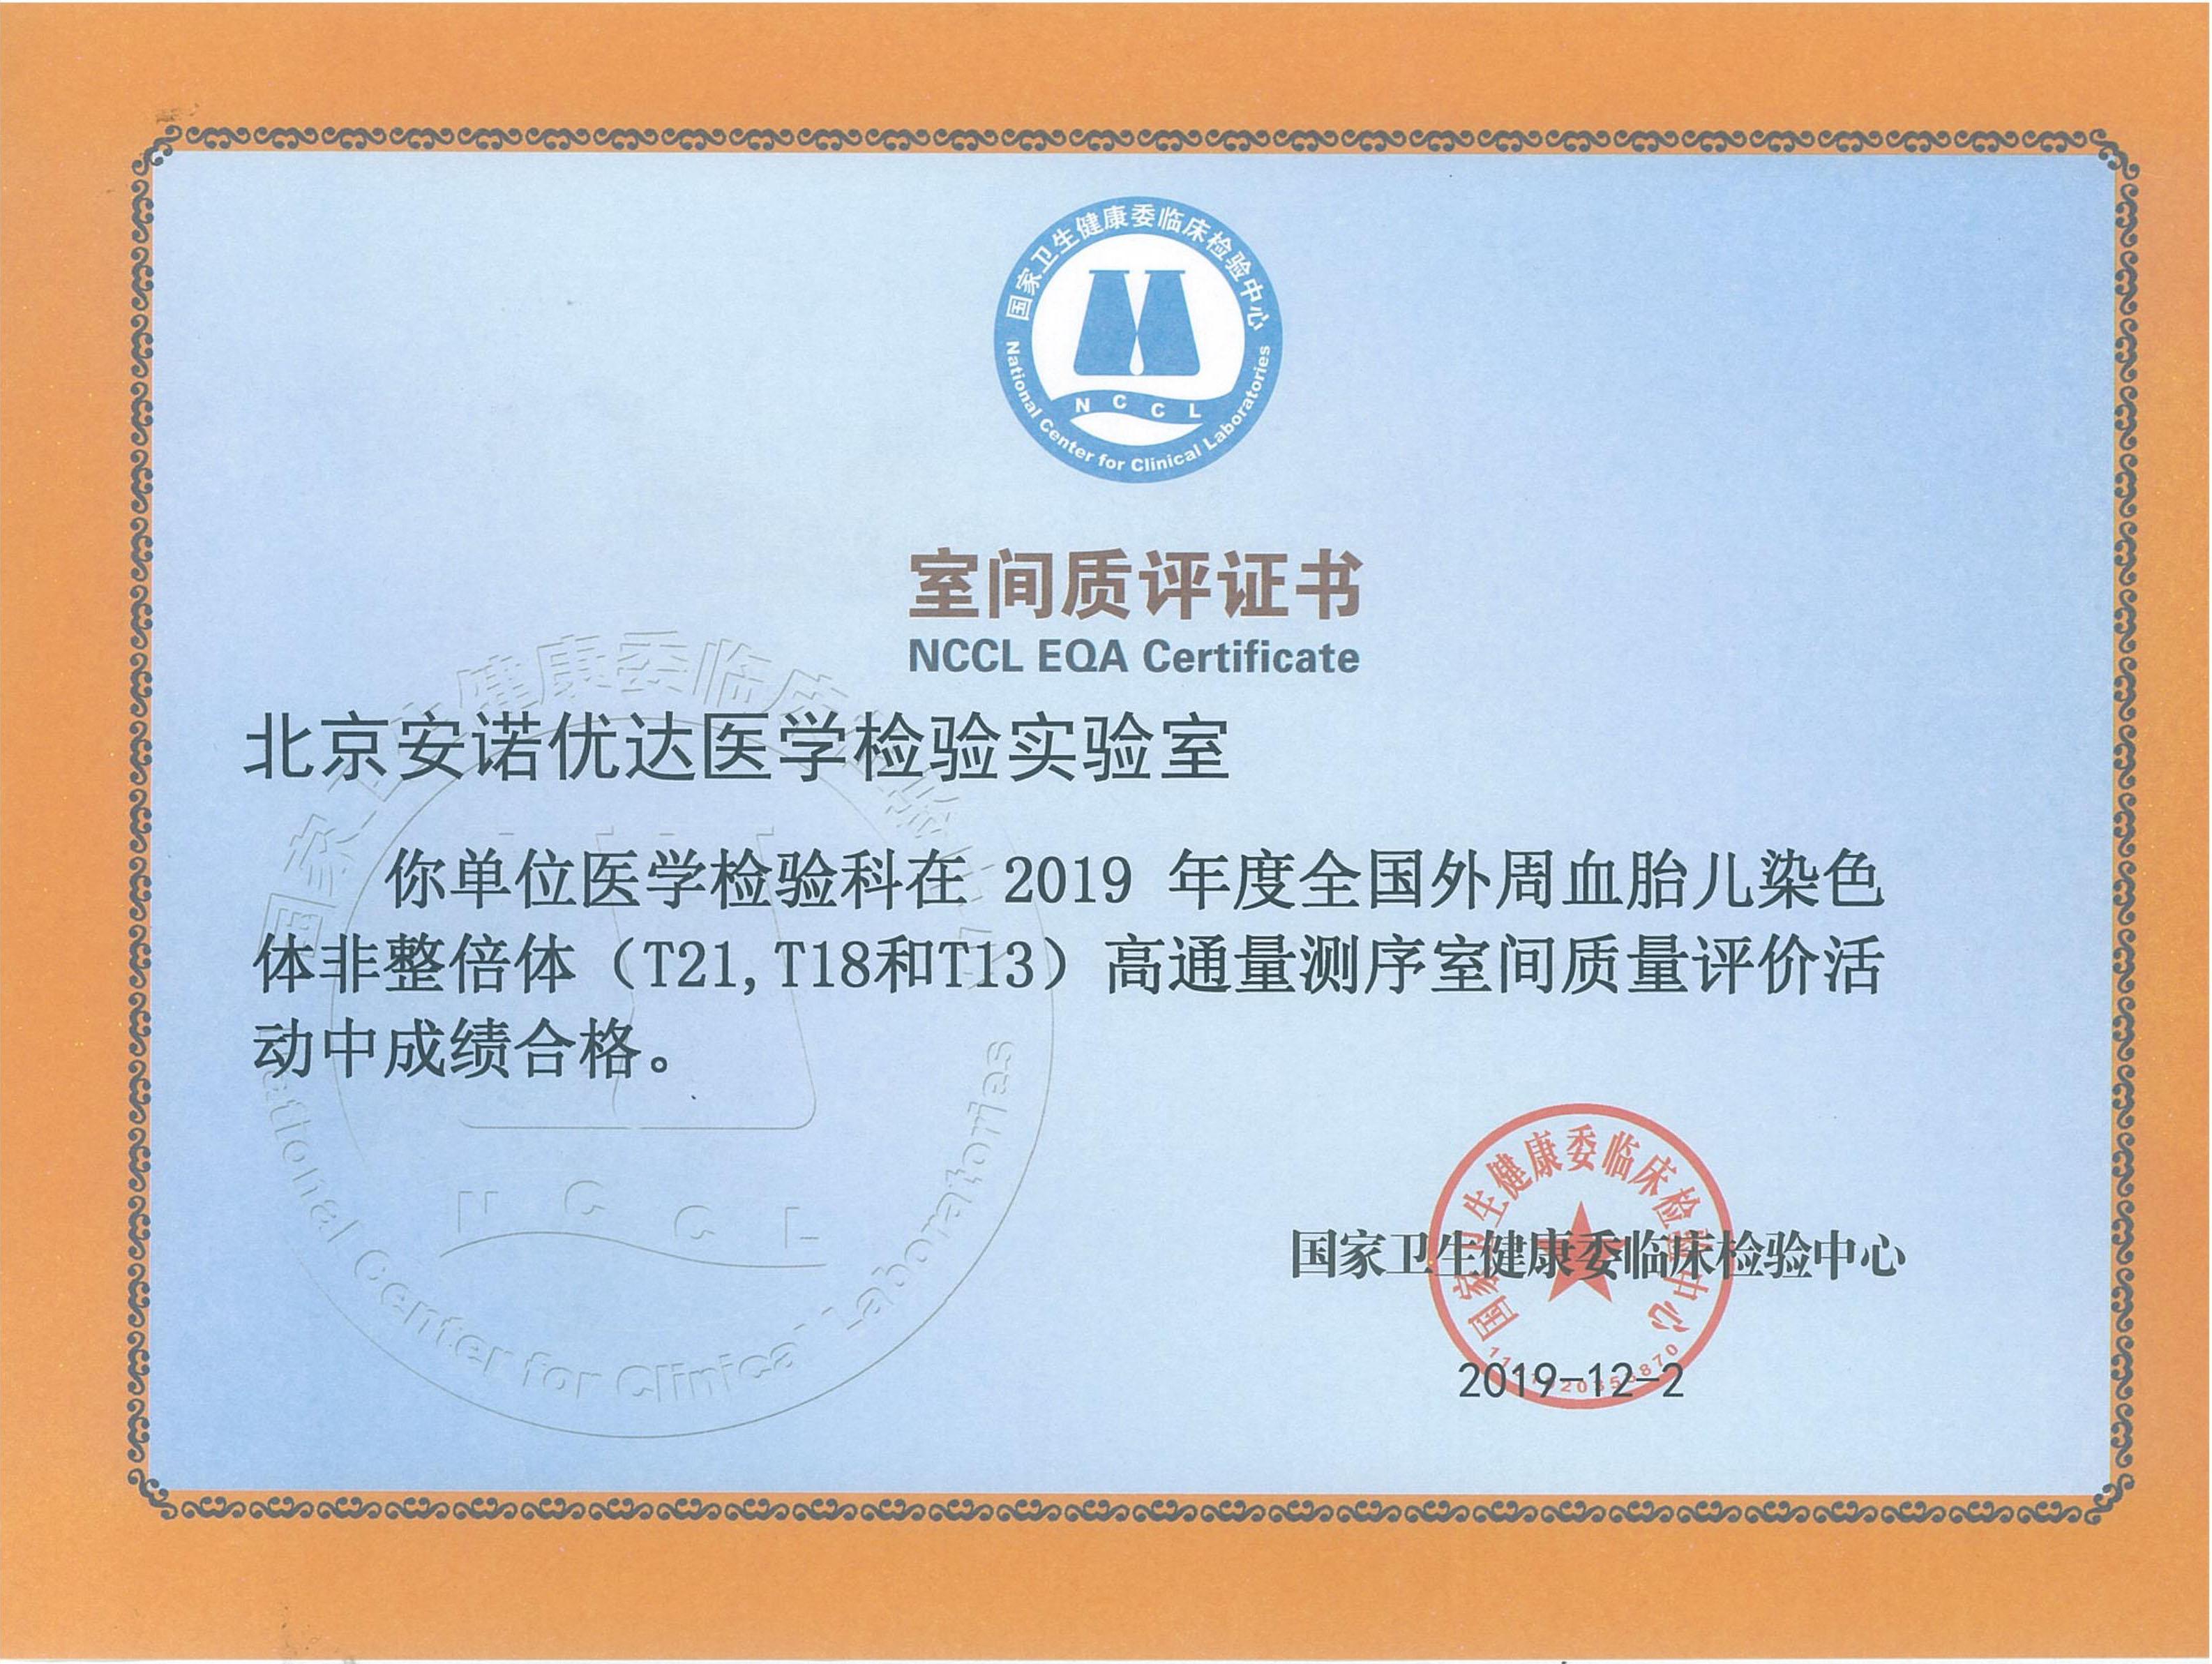 NIPT NCCL EQA Certificate (2019)